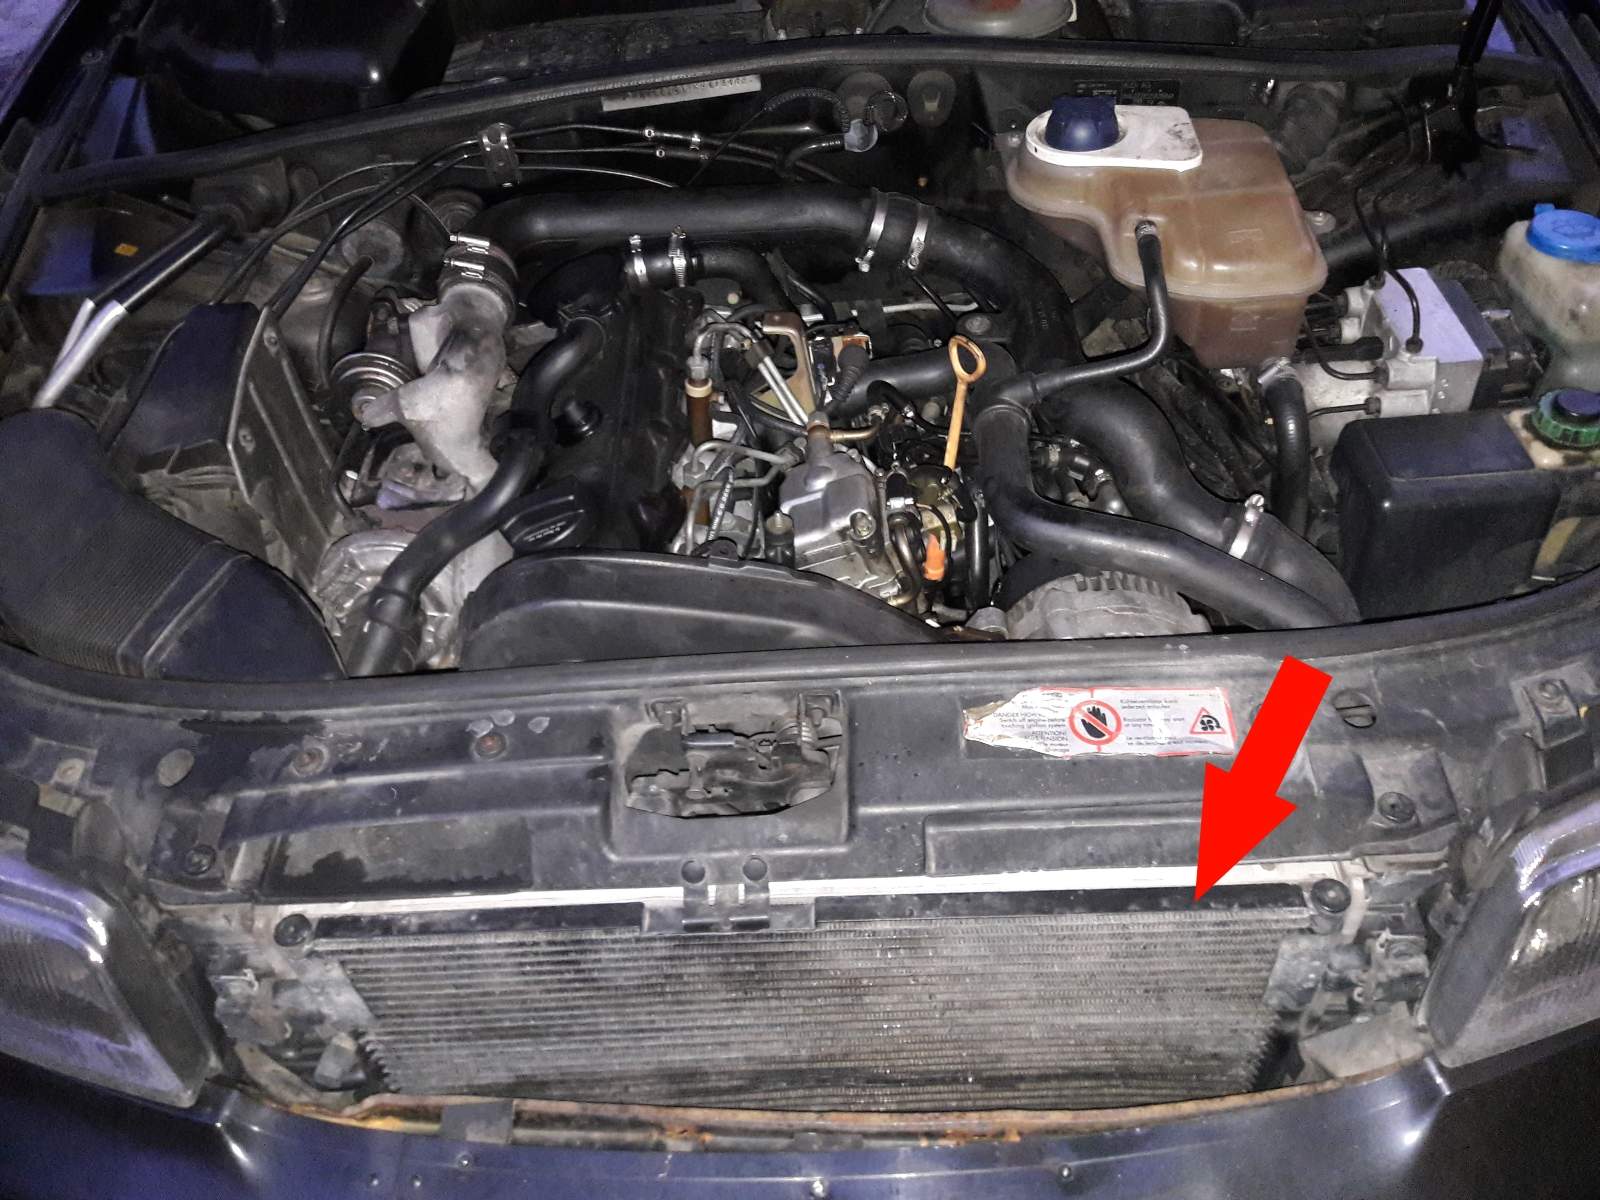 Welche Funktion hat der Kühlergrill und der sich dahinter befindliche  Lüfter im Auto (Audi A4 B5, Bilder im Anhang)? (Motor, Fahrzeug, Autofahren)